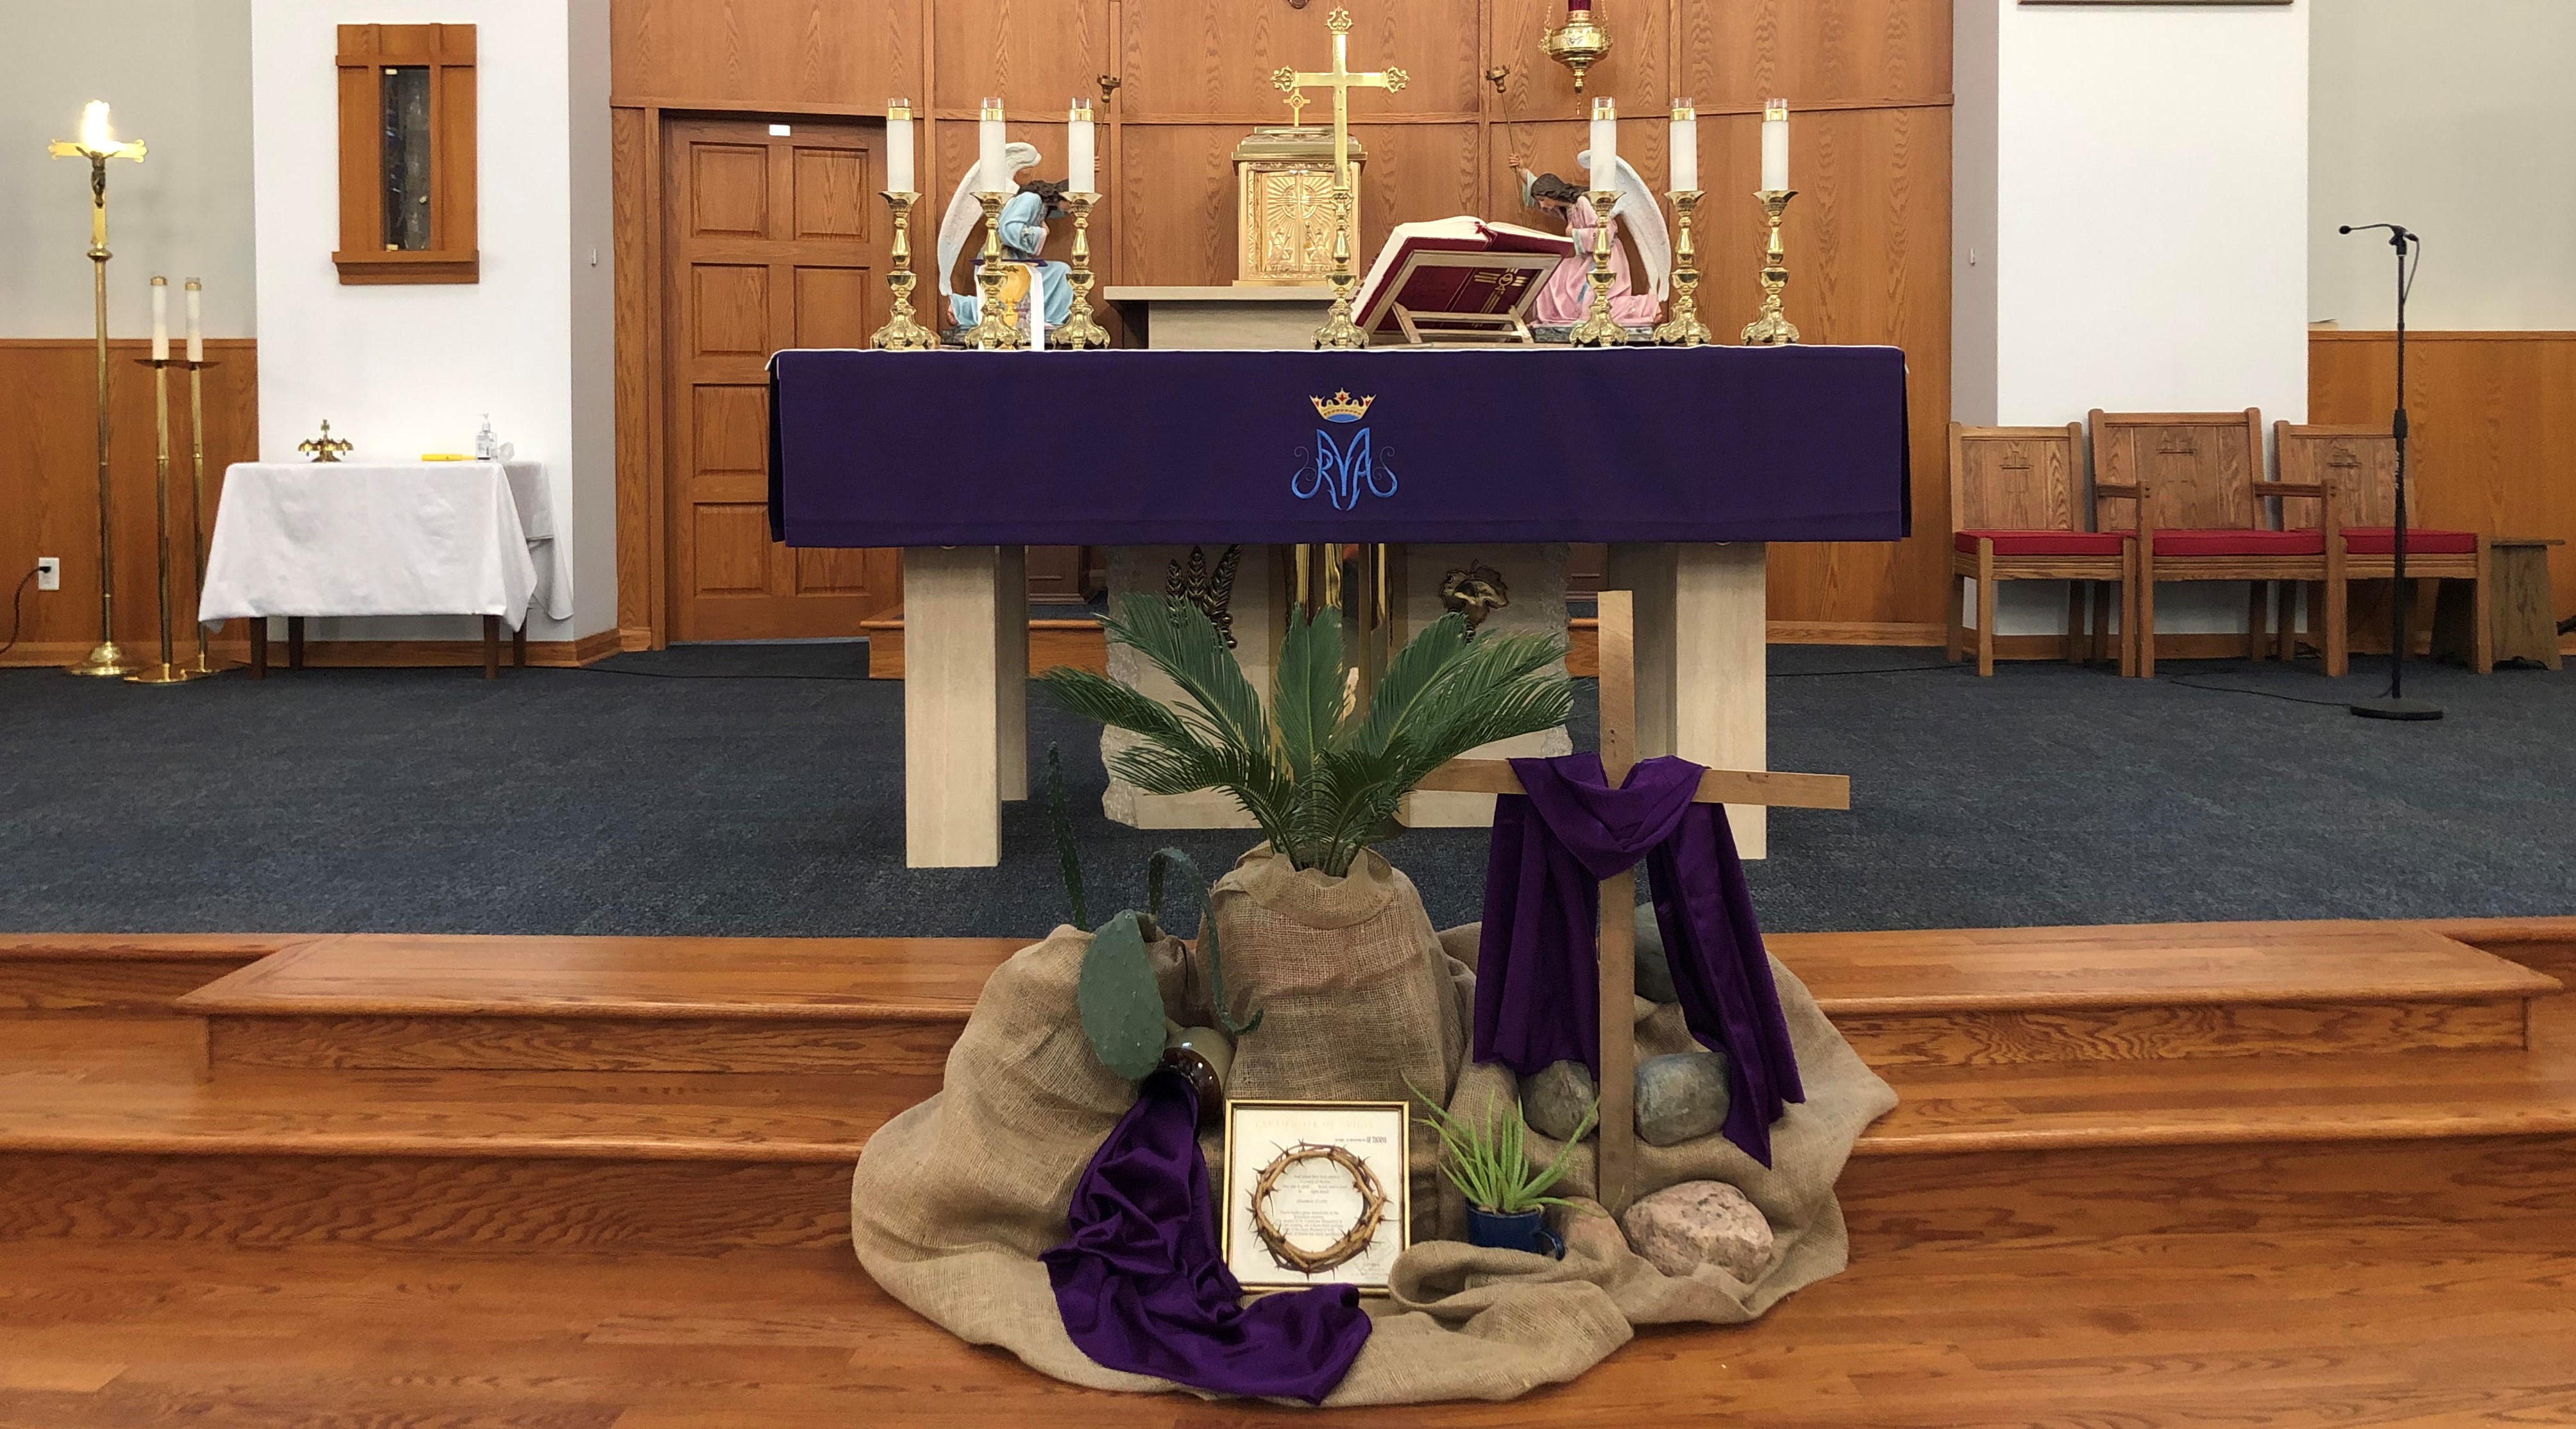 St. Mary's Sanctuary - Lent